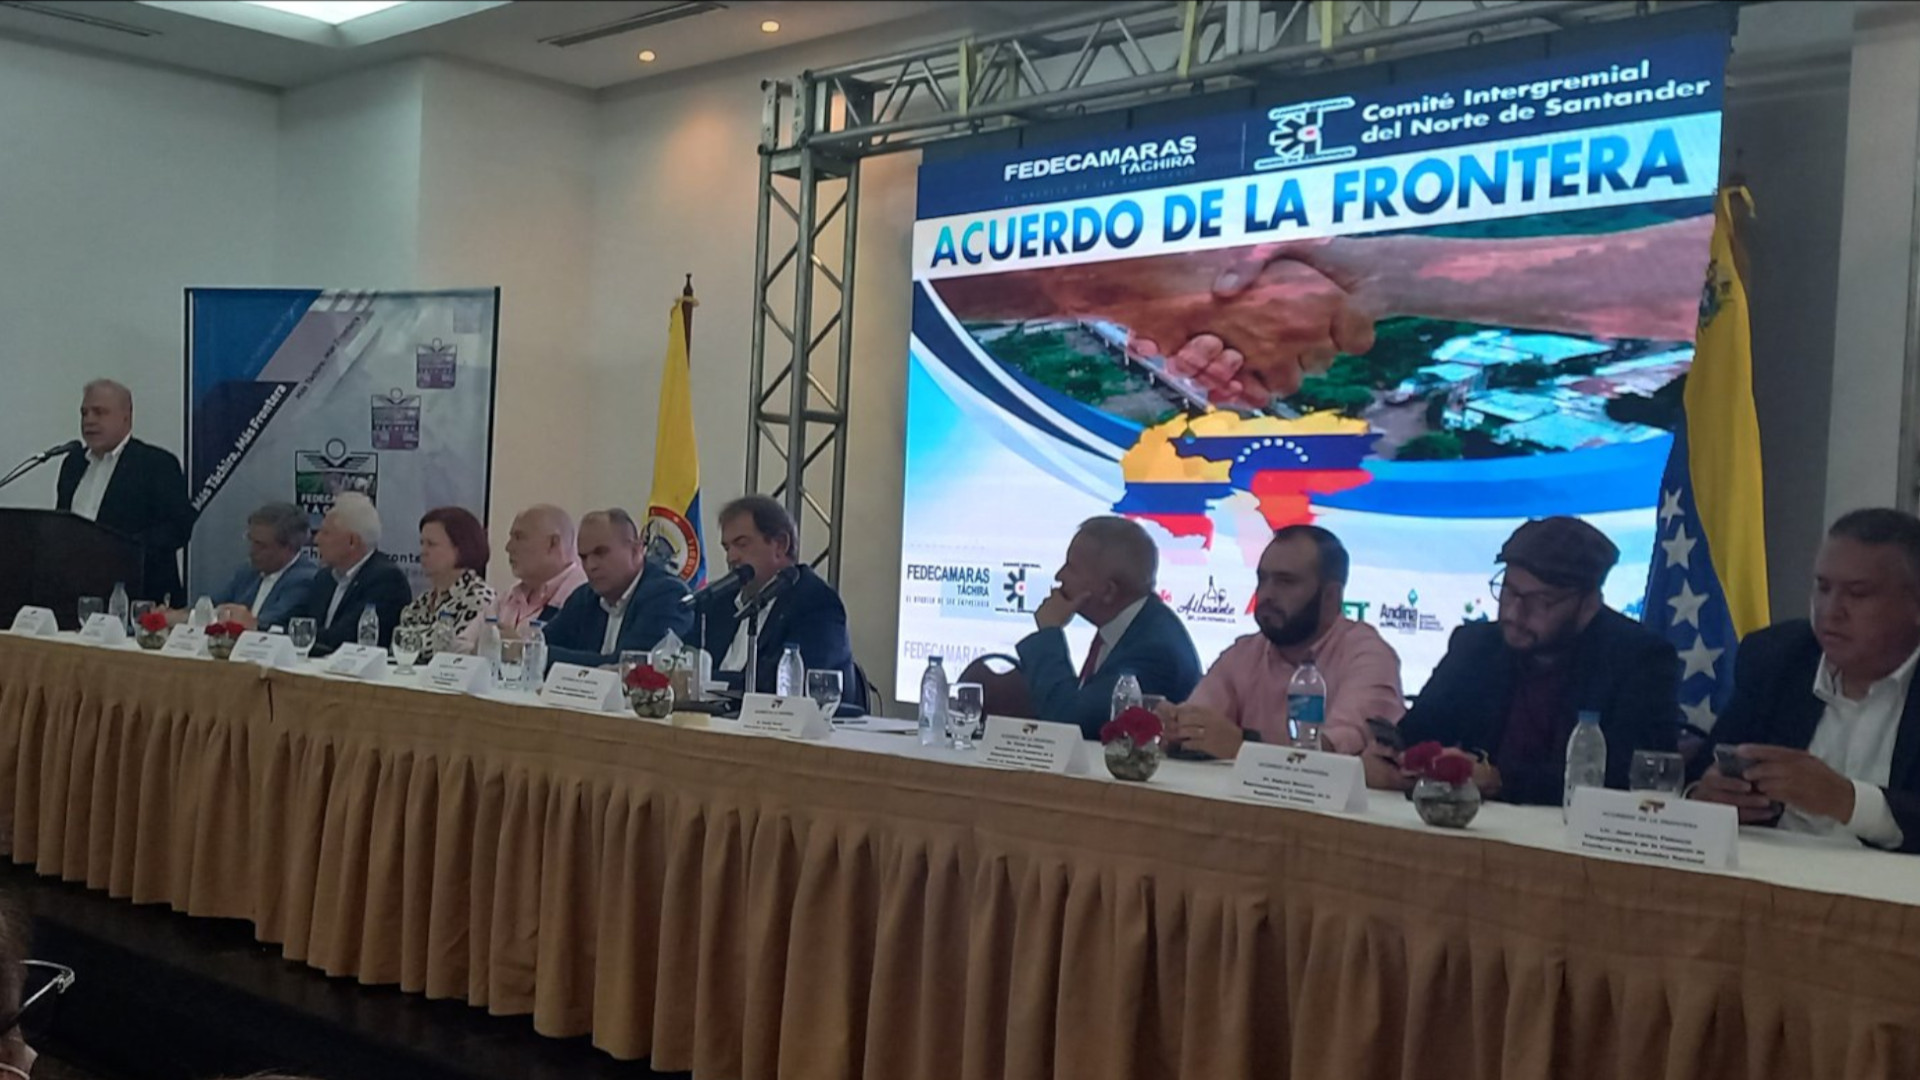 El lunes 4 de julio se reunieron en San Cristóbal (Táchira) empresarios venezolanos y colombianos con miras a la reapertura de la frontera entre los dos países. Foto: Fedecámaras Táchira